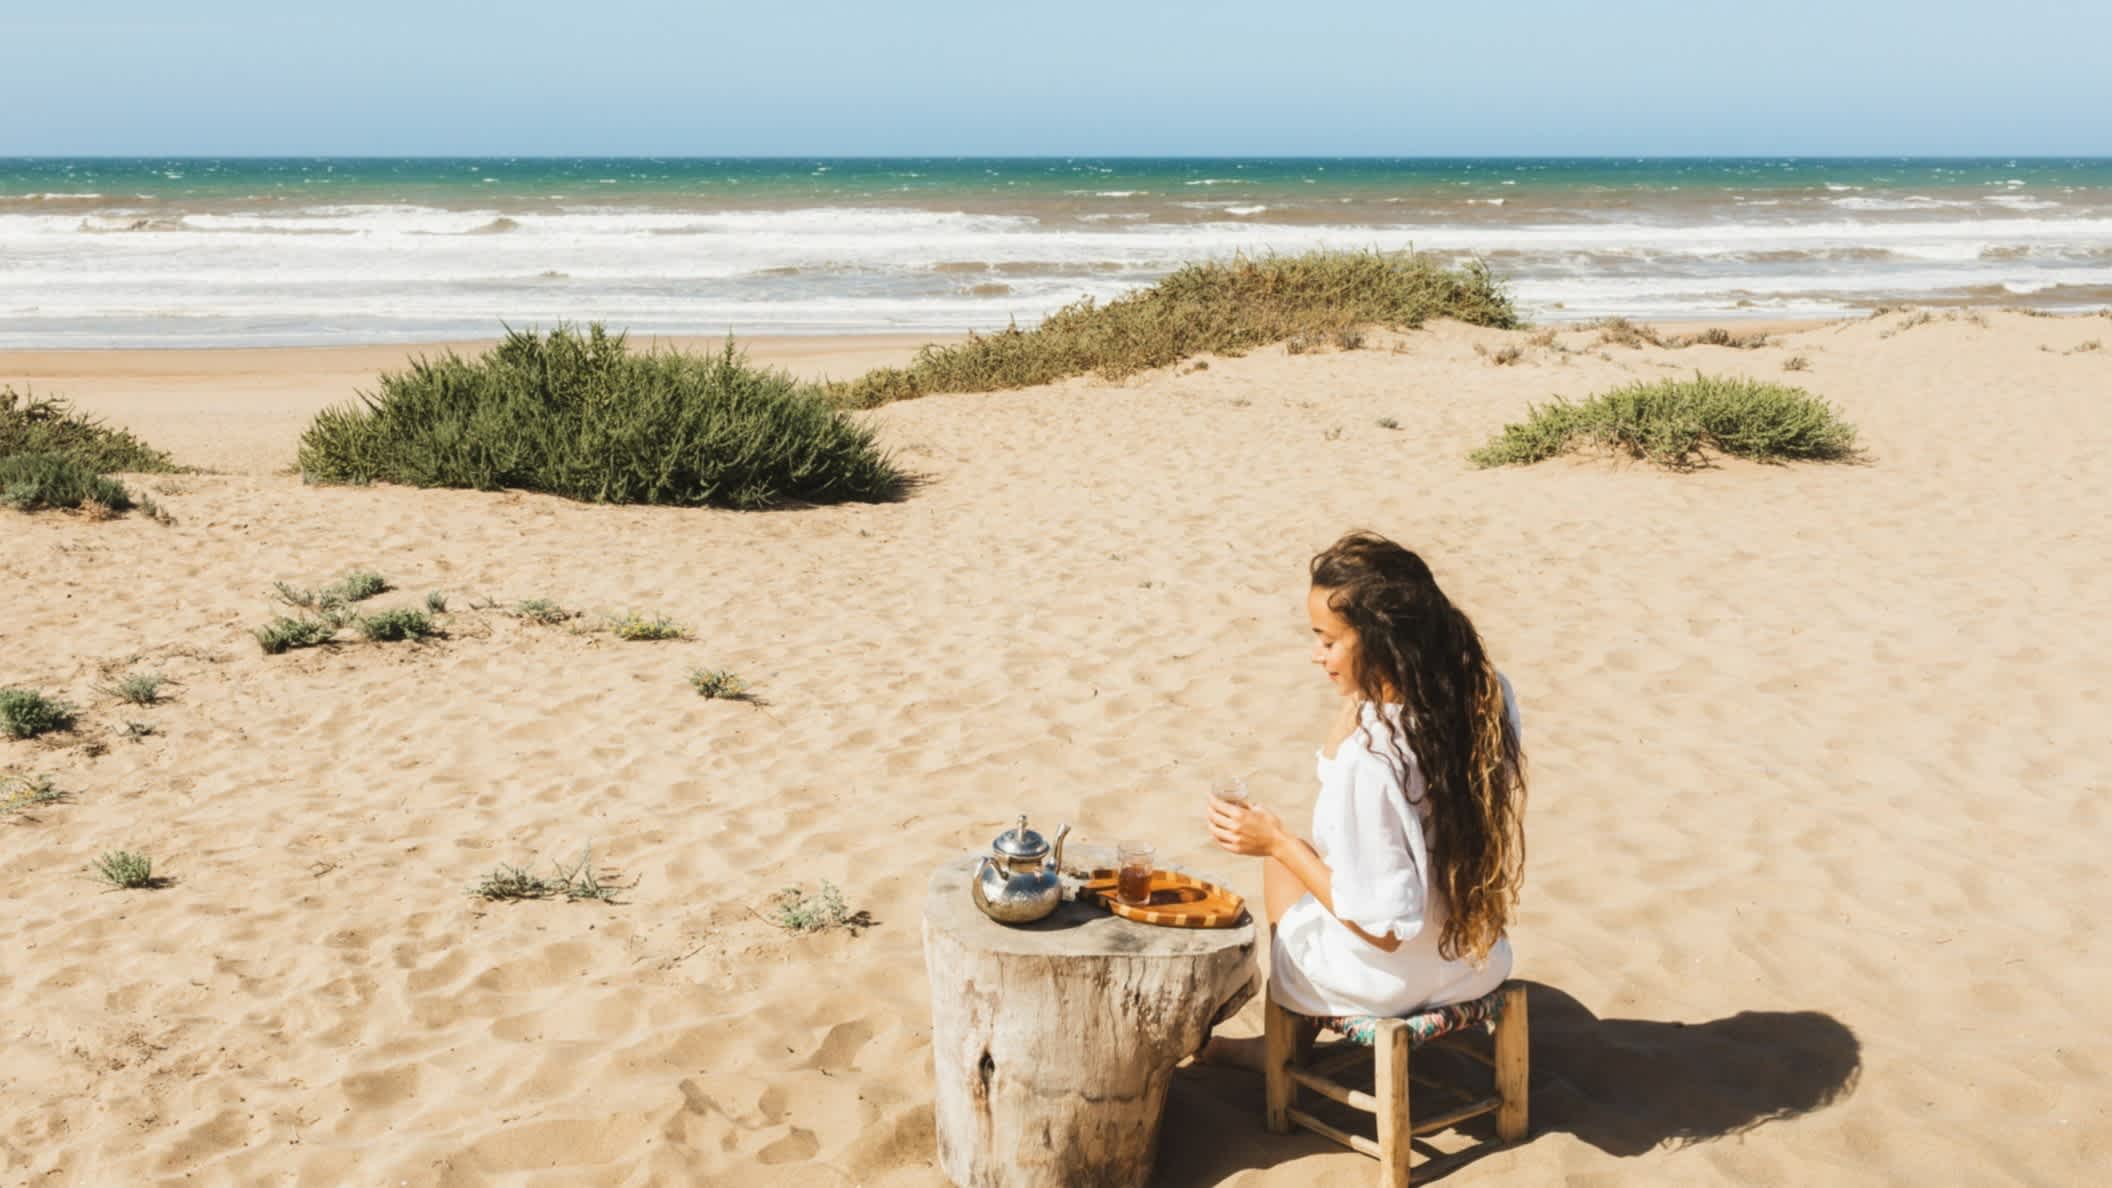 Femme dégustant un thé marocain sur une plage de sable de l'océan au Maroc

